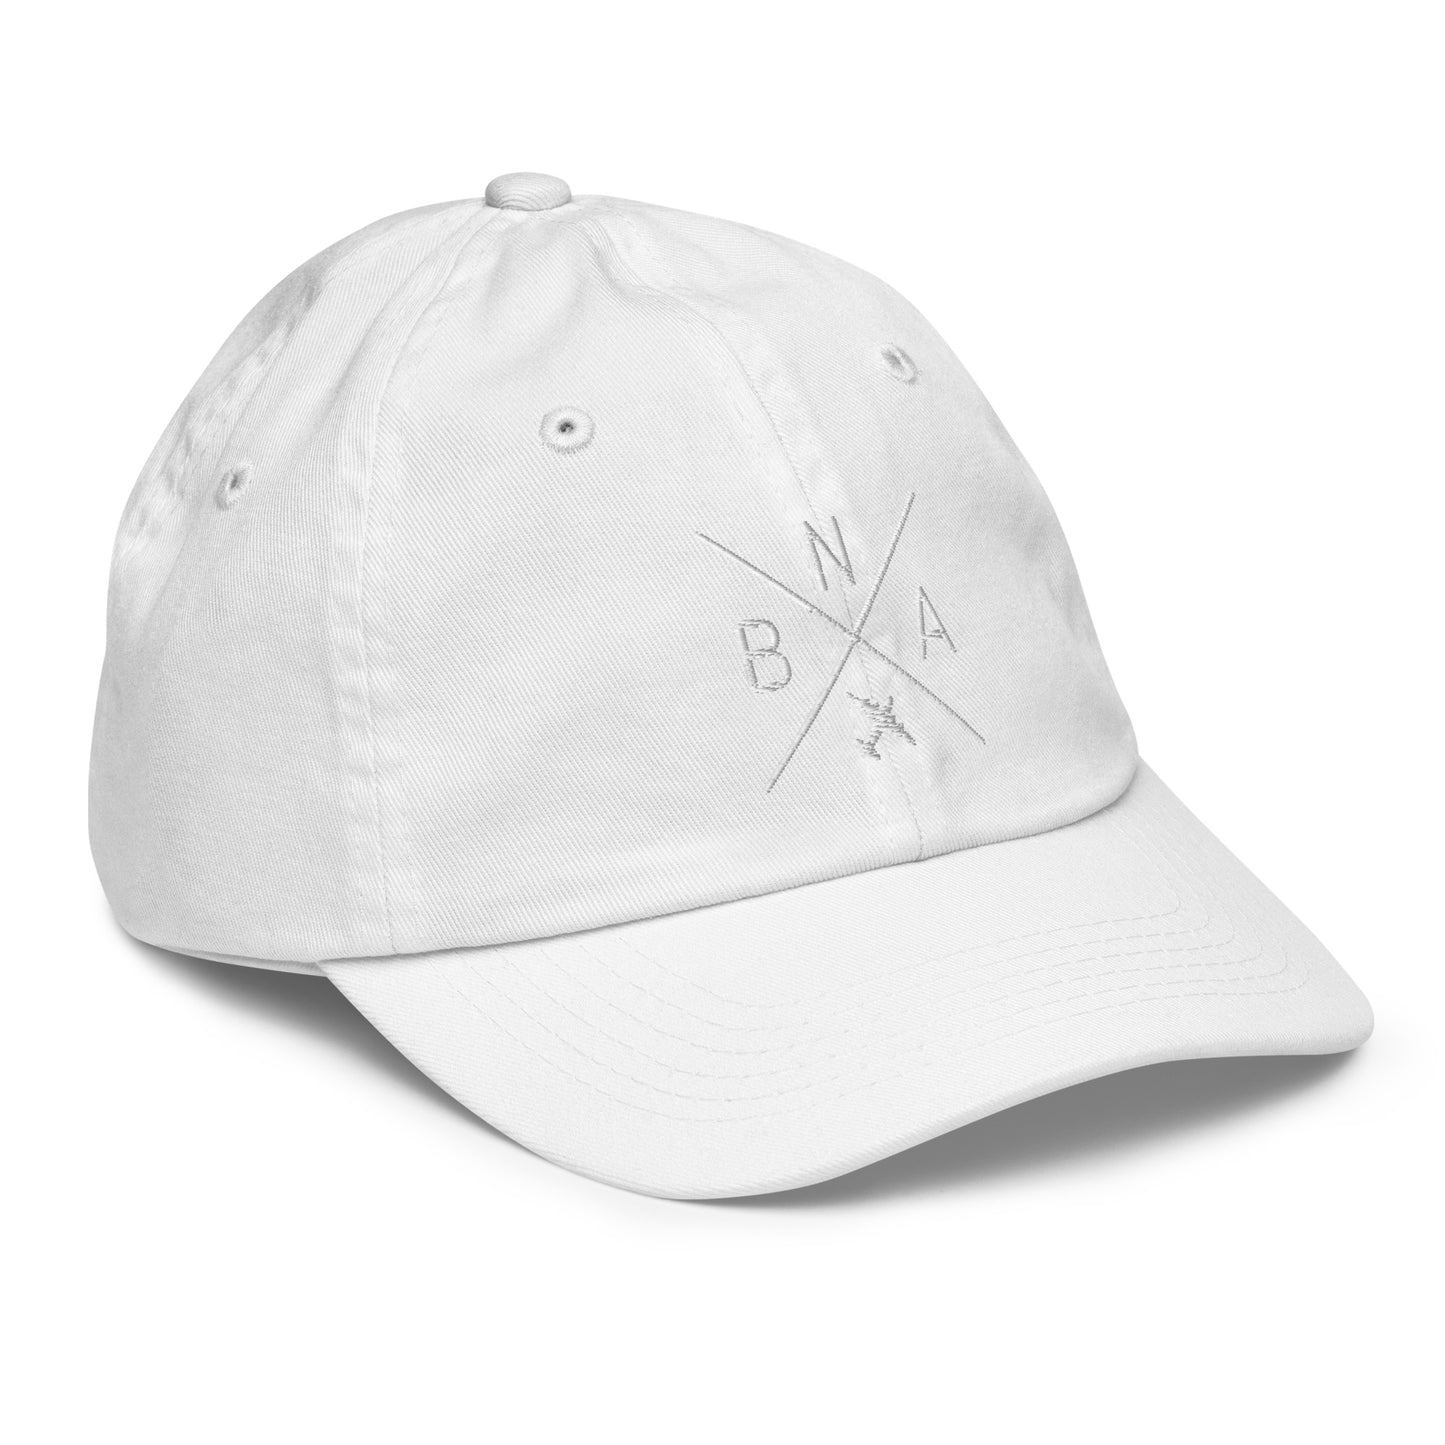 Crossed-X Kid's Baseball Cap - White • BNA Nashville • YHM Designs - Image 35